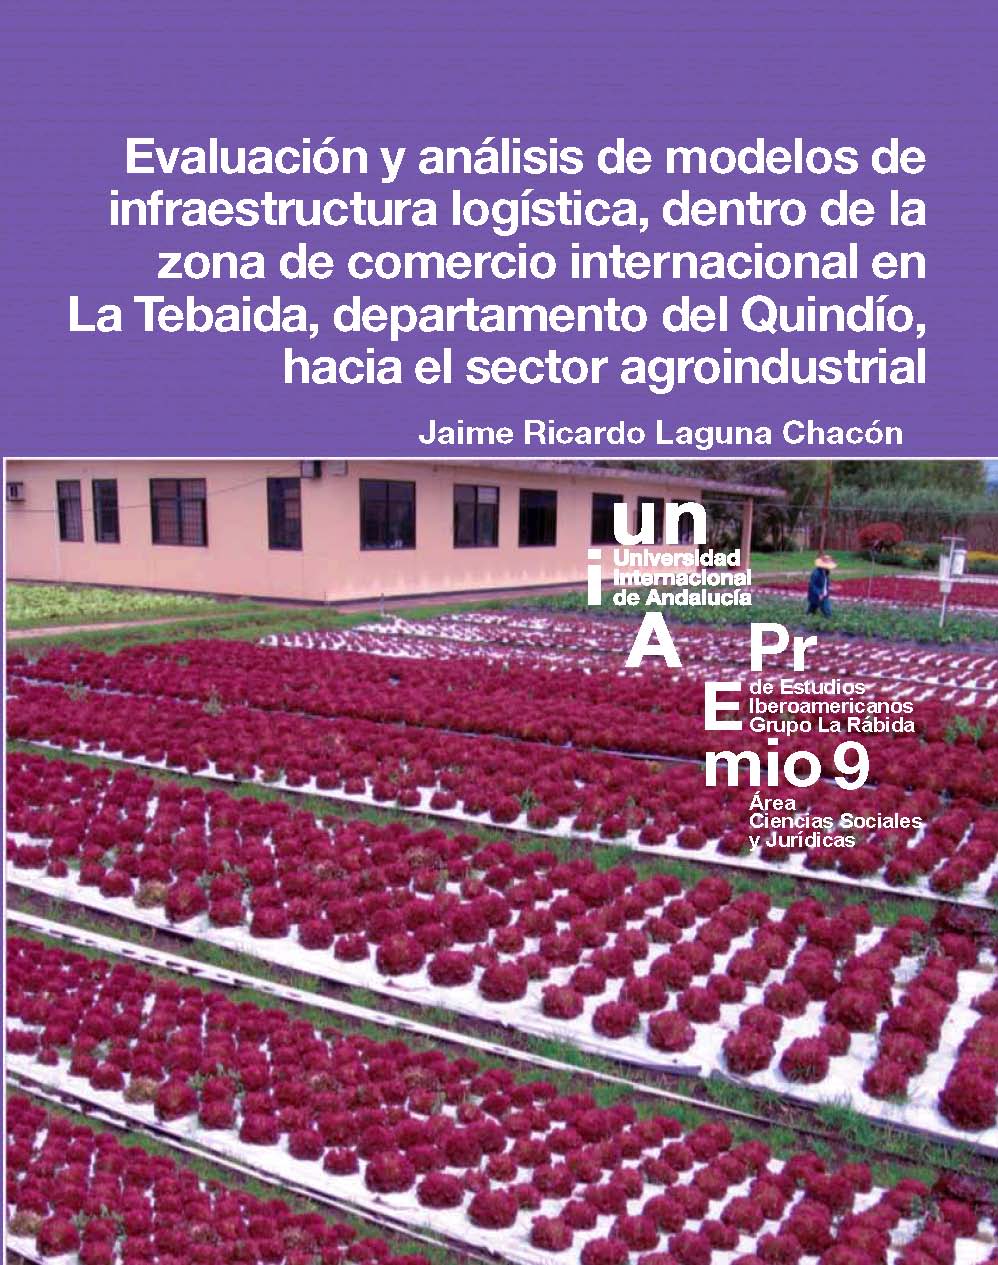 Evaluación y análisis de modelos de infraestructura logística, dentro de la zona de comercio internacional en La Tebaida, departamento del Quindío, hacia el sector agroindustrial